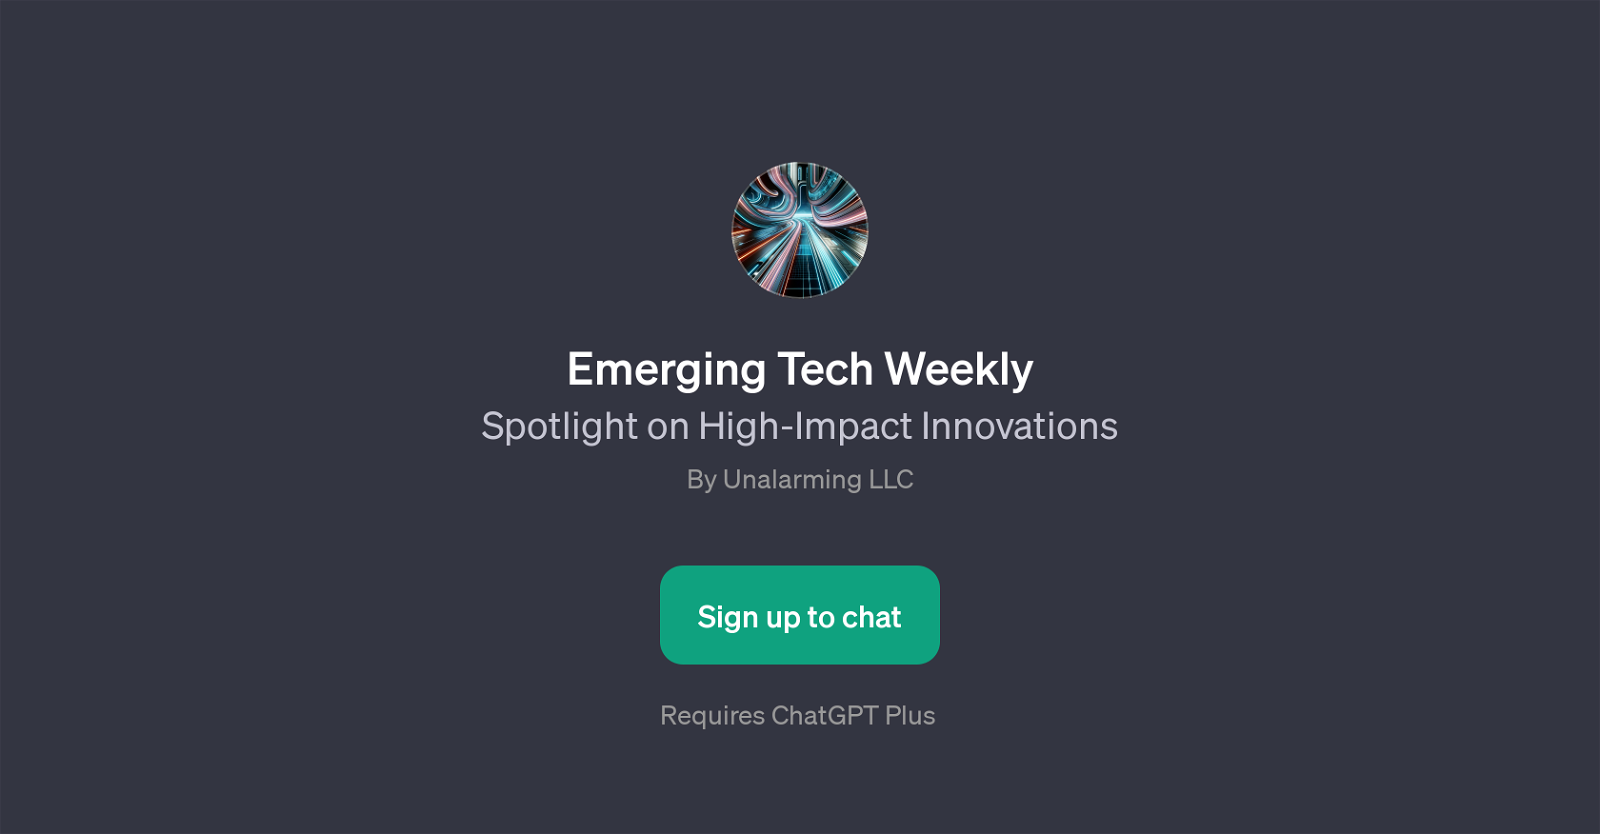 Emerging Tech Weekly website